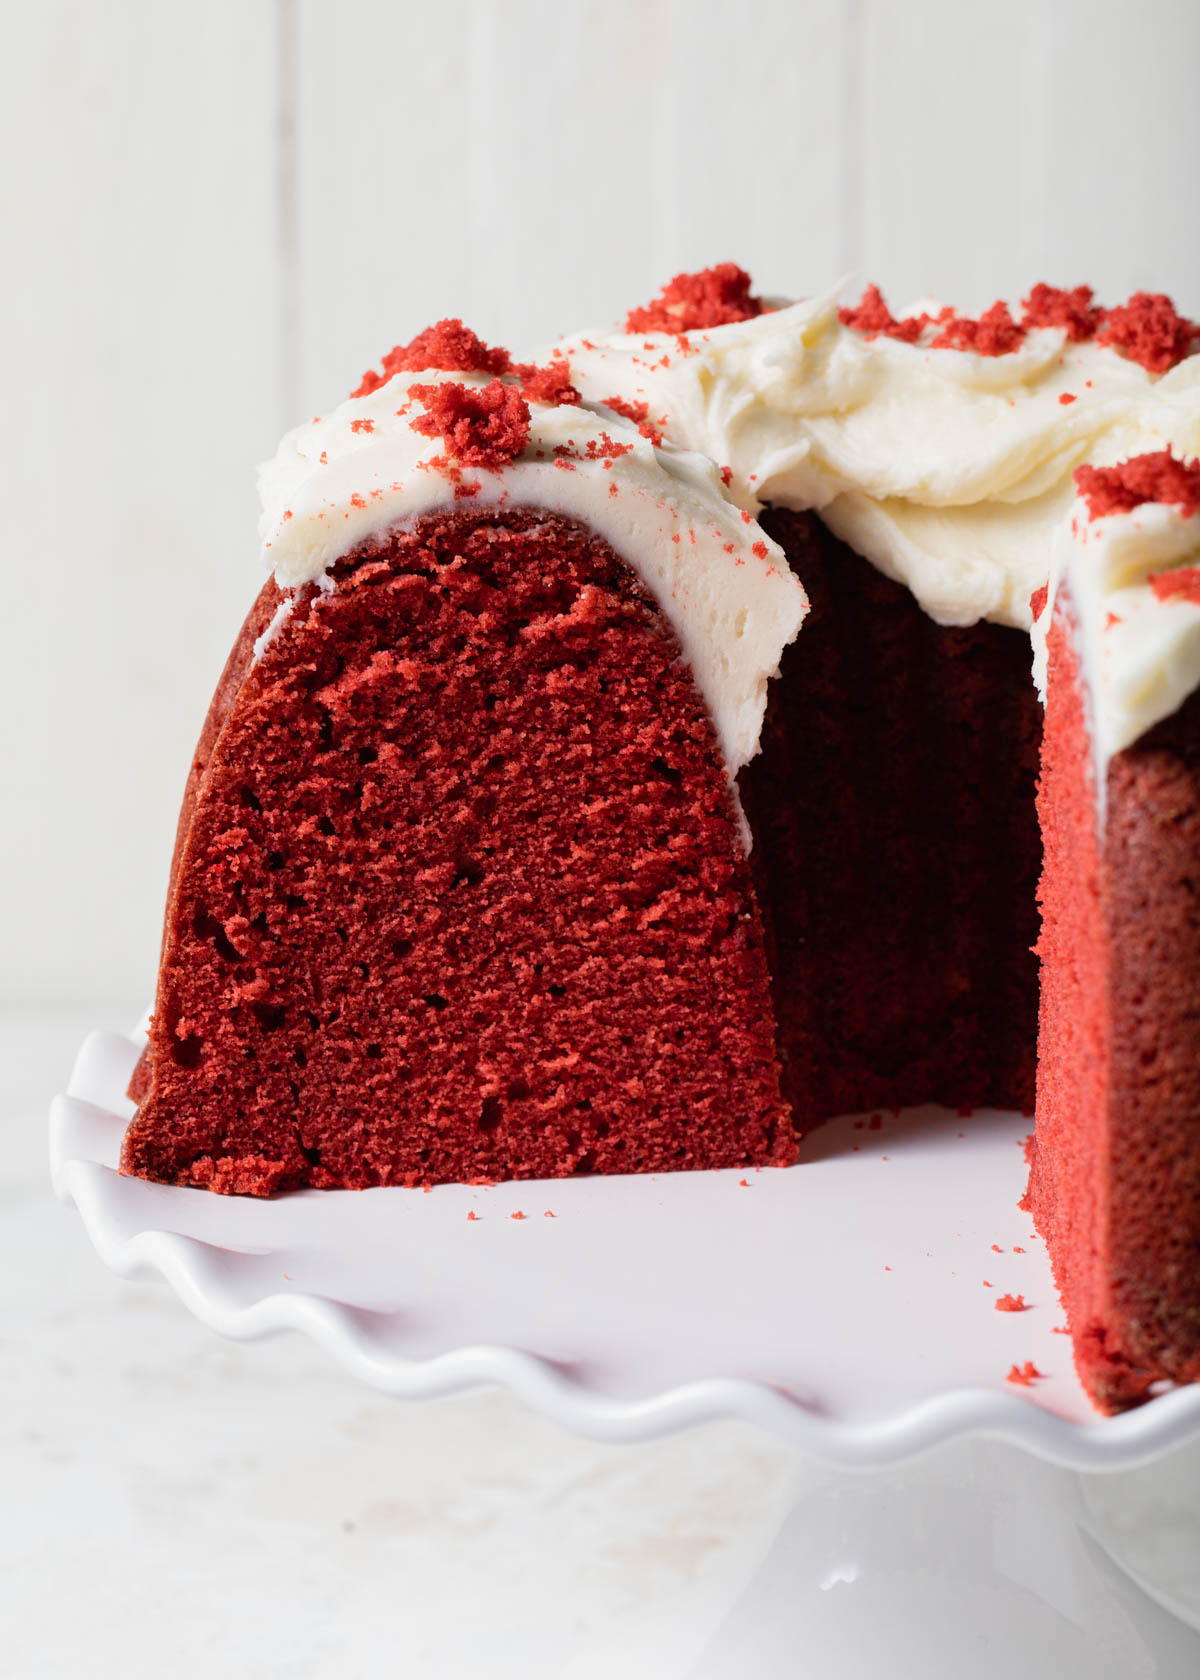 A close-up of a sliced Red Velvet Bundt Cake